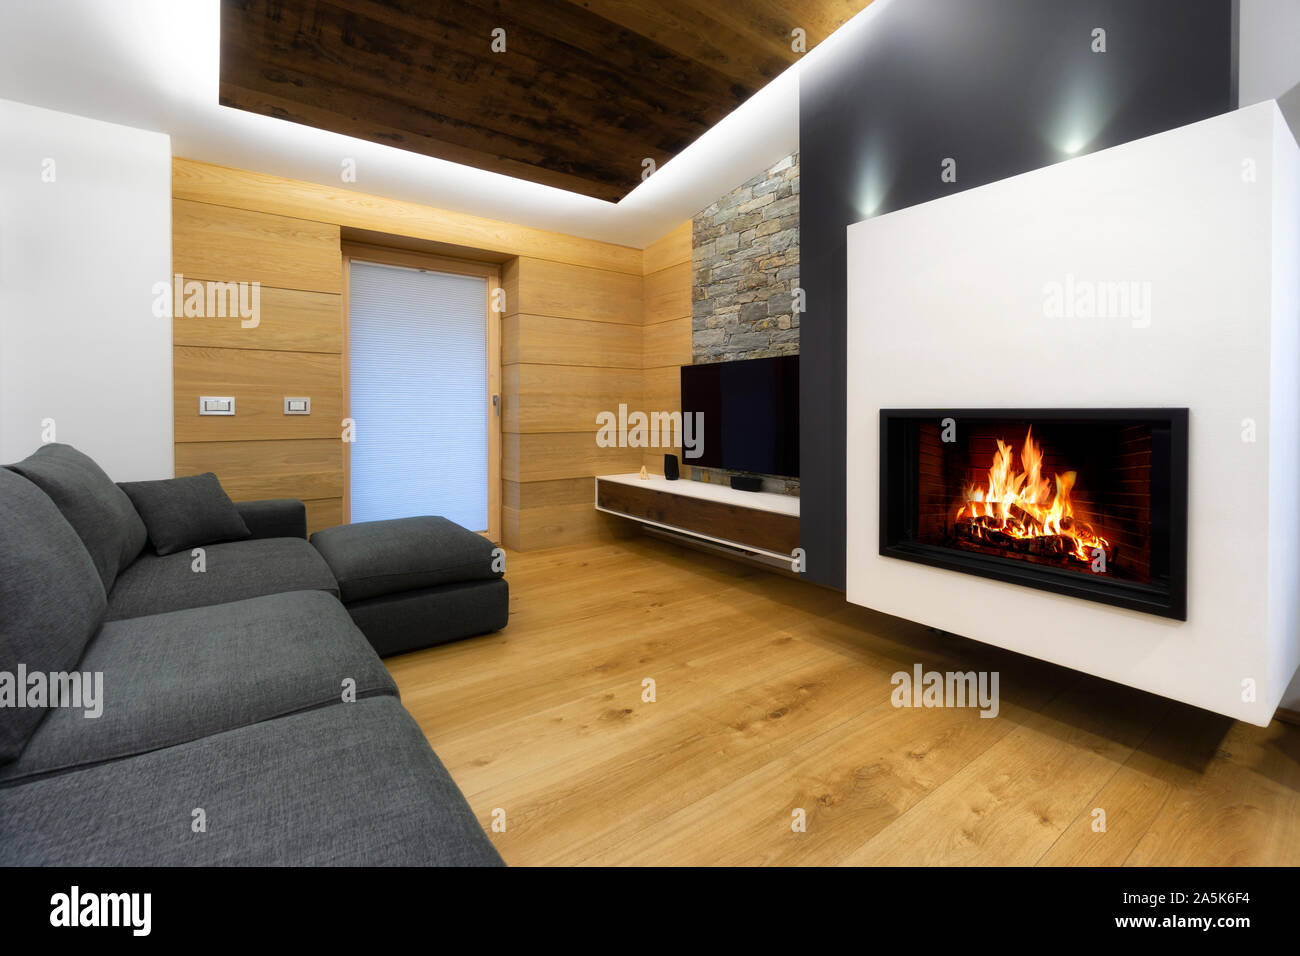 Salon moderne en bois intérieur avec canapé et cheminée Banque D'Images